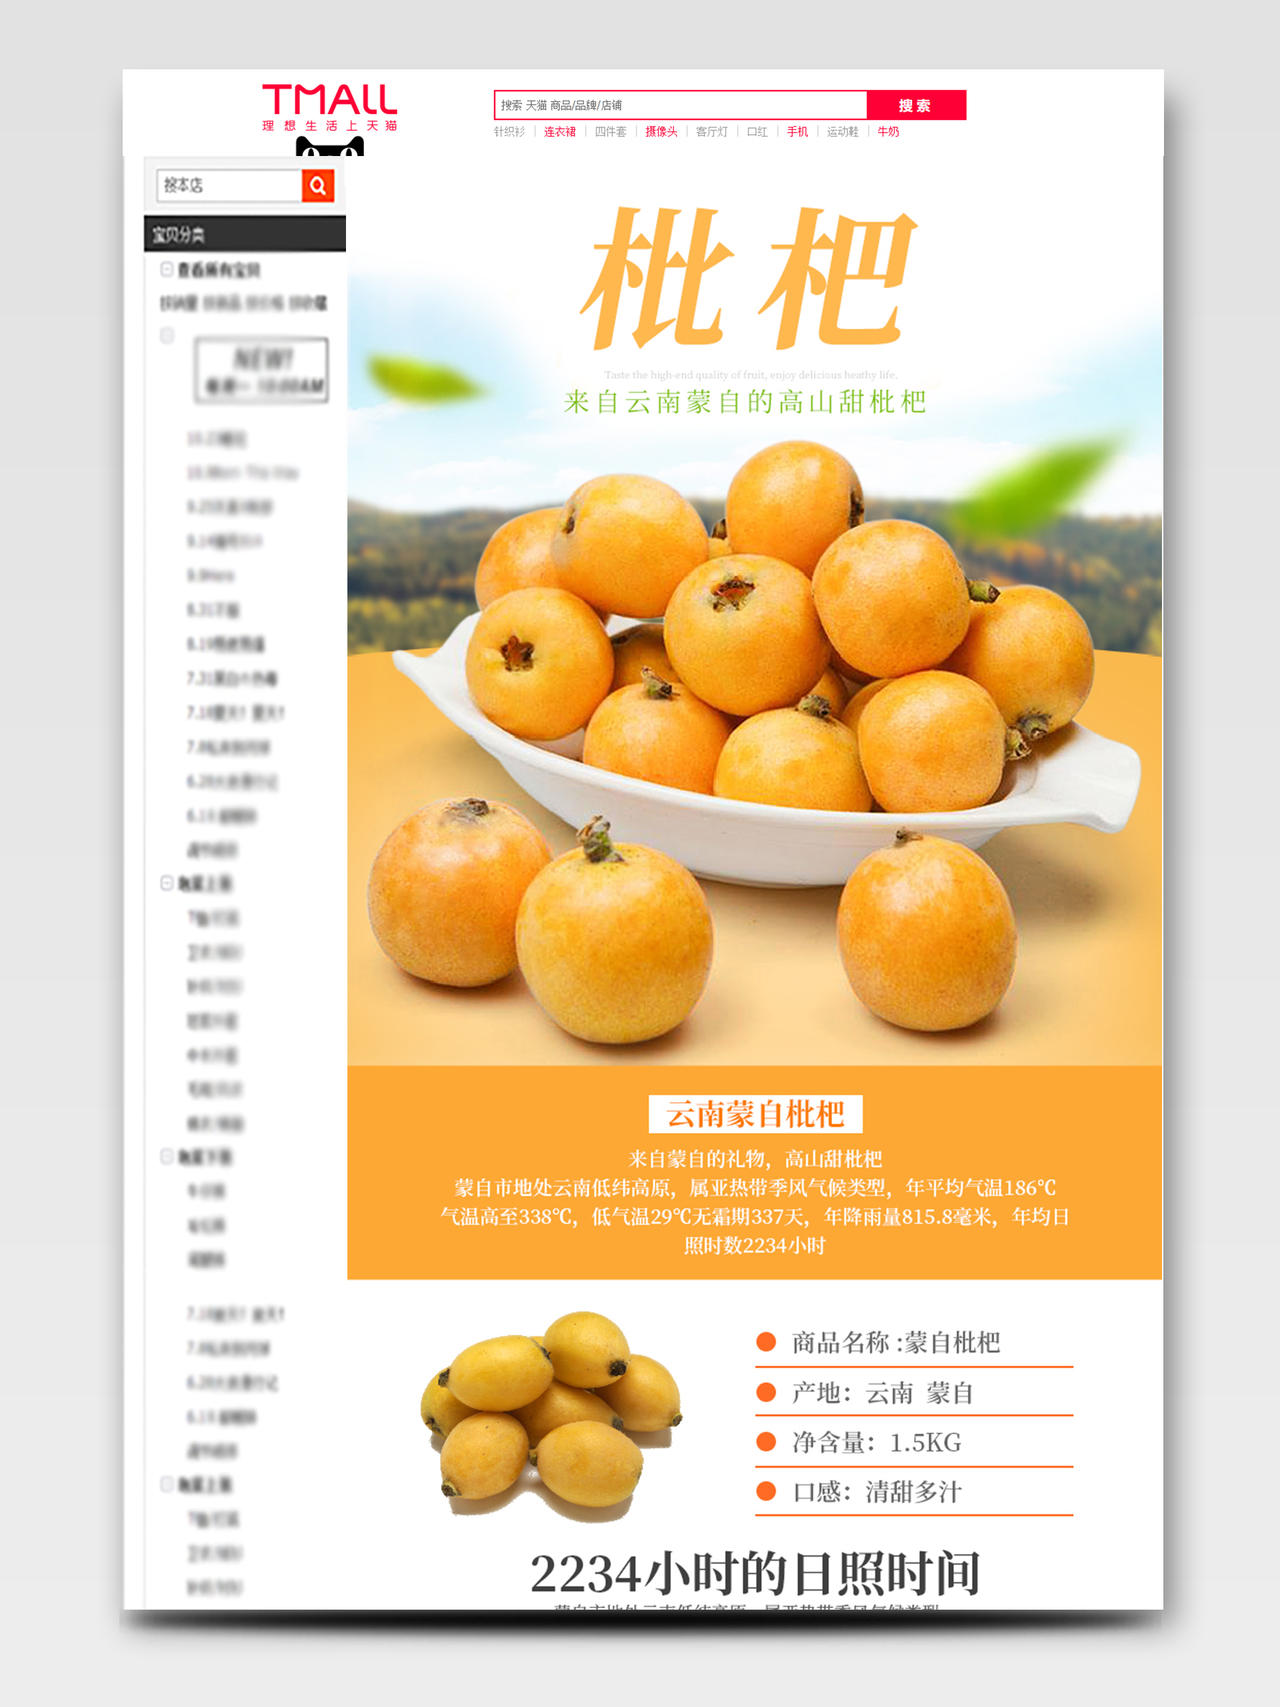 吃货节517橙色枇杷简约美食淘宝天猫电商促销活动详情页水果